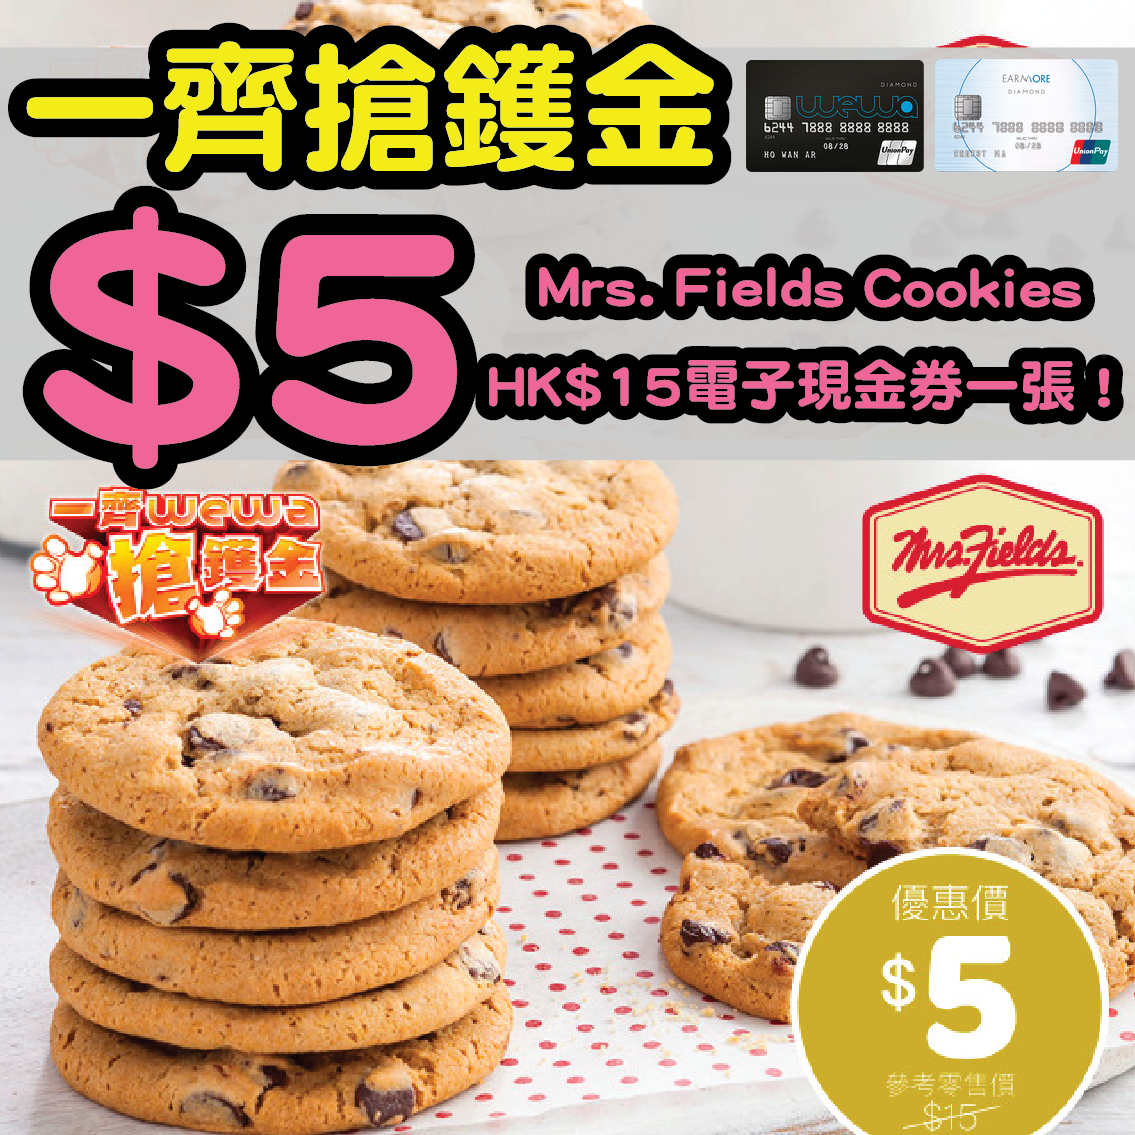 【一齊WeWa搶鑊金】安信EarnMORE / 安信WeWa卡 $5 買到Mrs. Fields Cookies HK$15電子現金券一張！